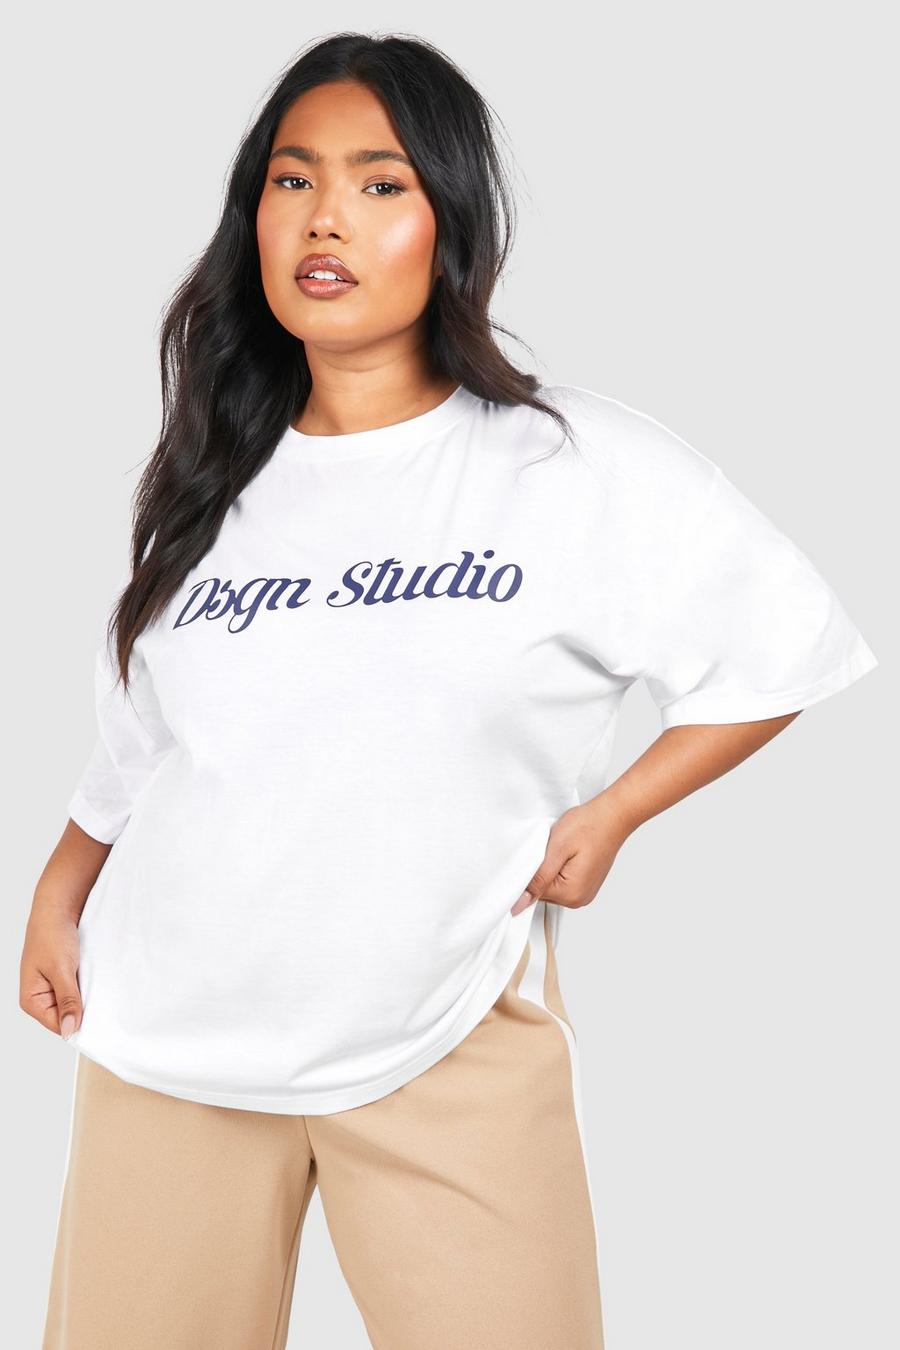 Plus Oversize T-Shirt mit Dsgn Studio Schriftzug, White